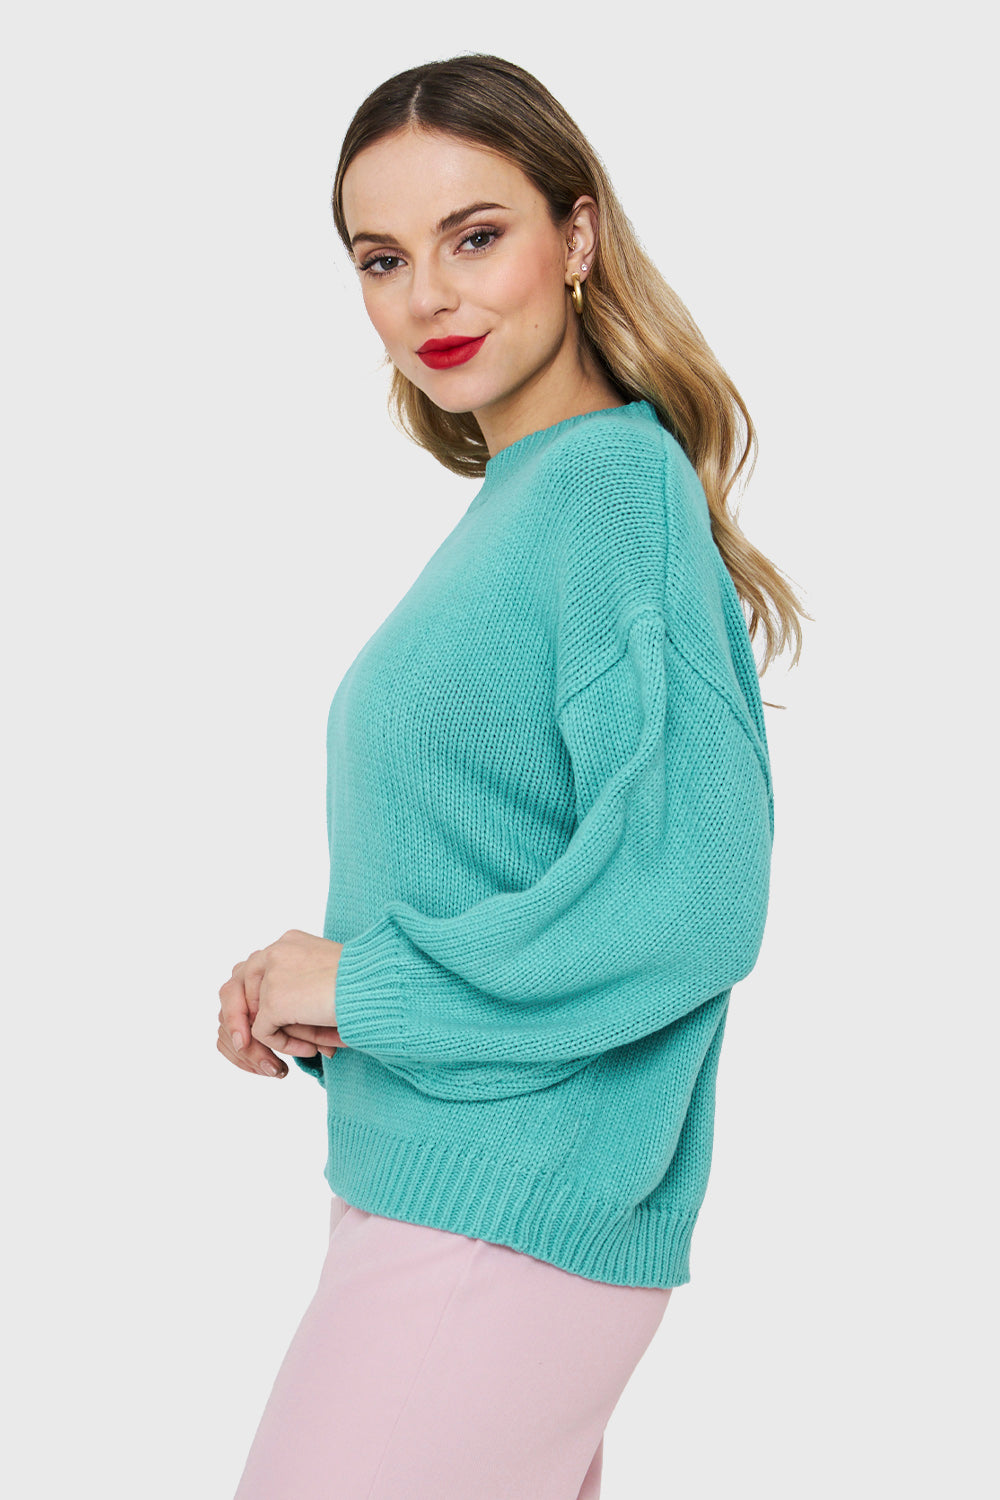 Sweater Básico Holgado Turquesa